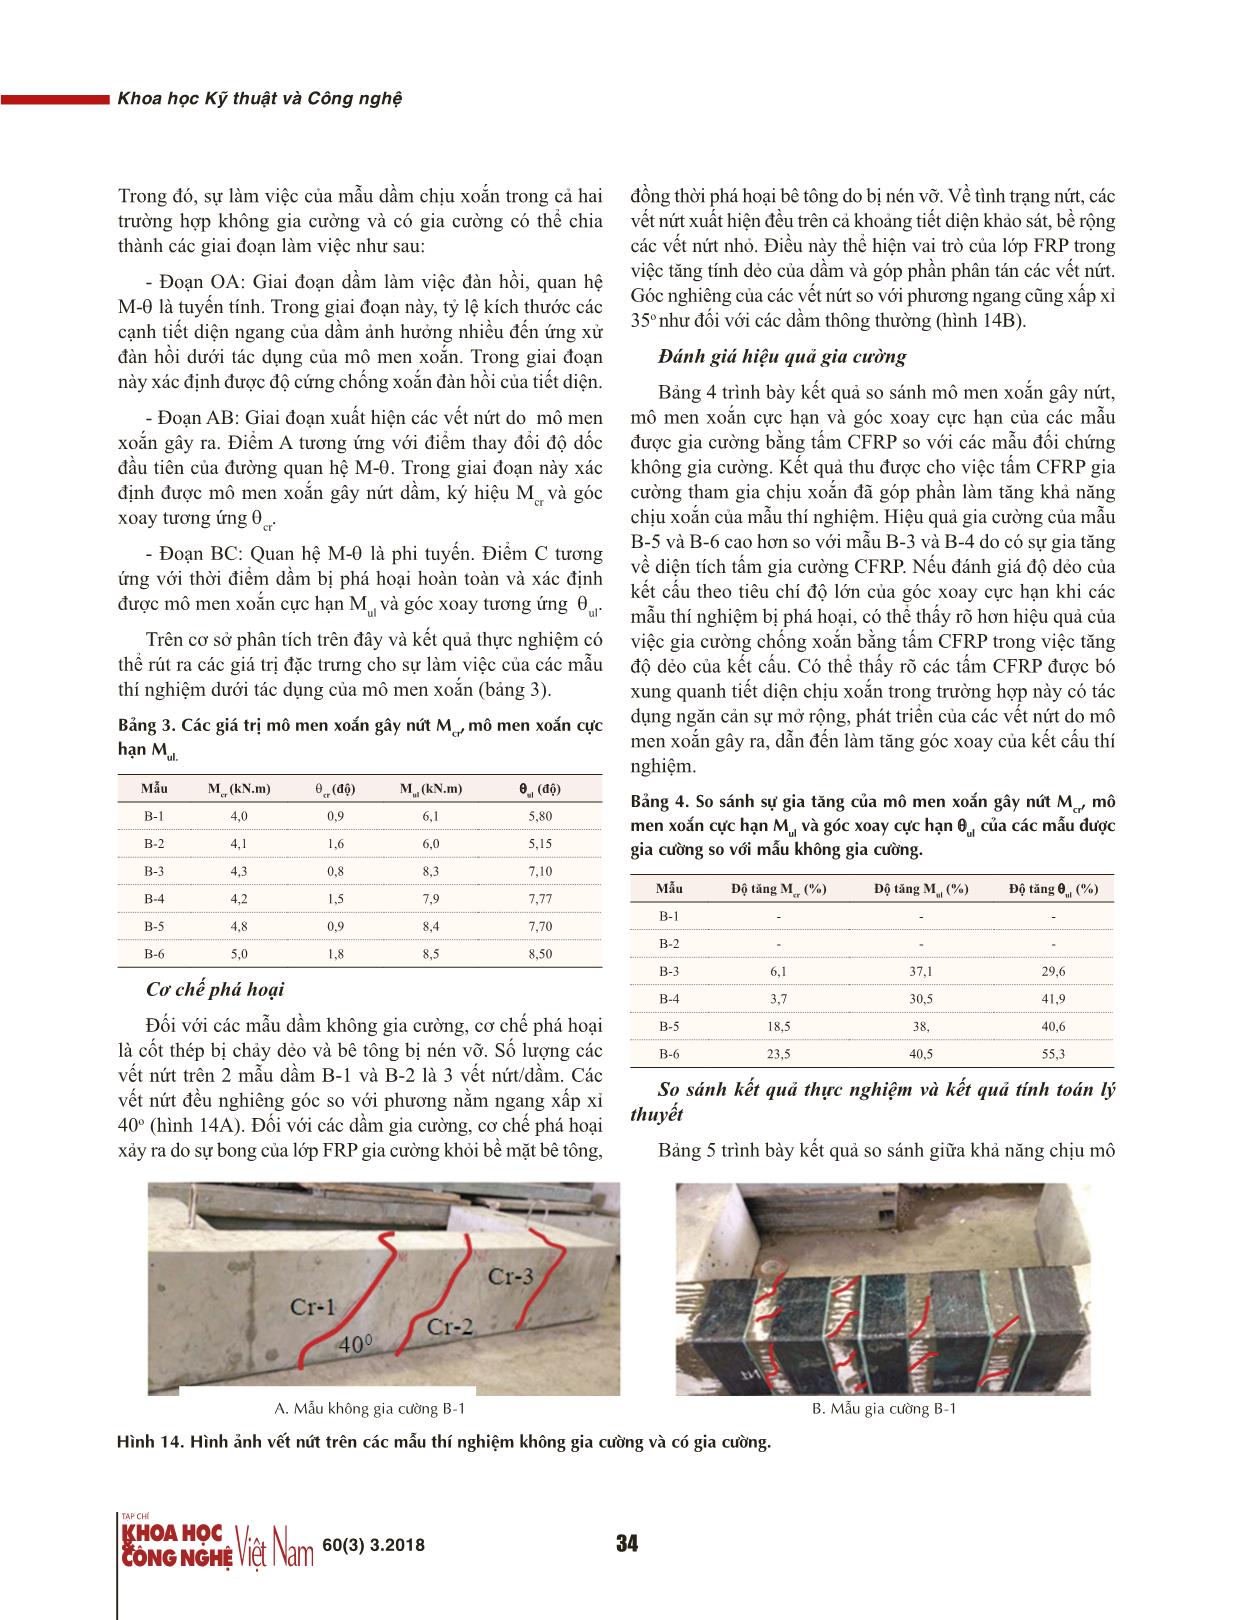 Nghiên cứu thực nghiệm hiệu quả gia cường dầm bê tông cốt thép chịu xoắn bằng vật liệu tấm sợi các bon CFRP trang 6